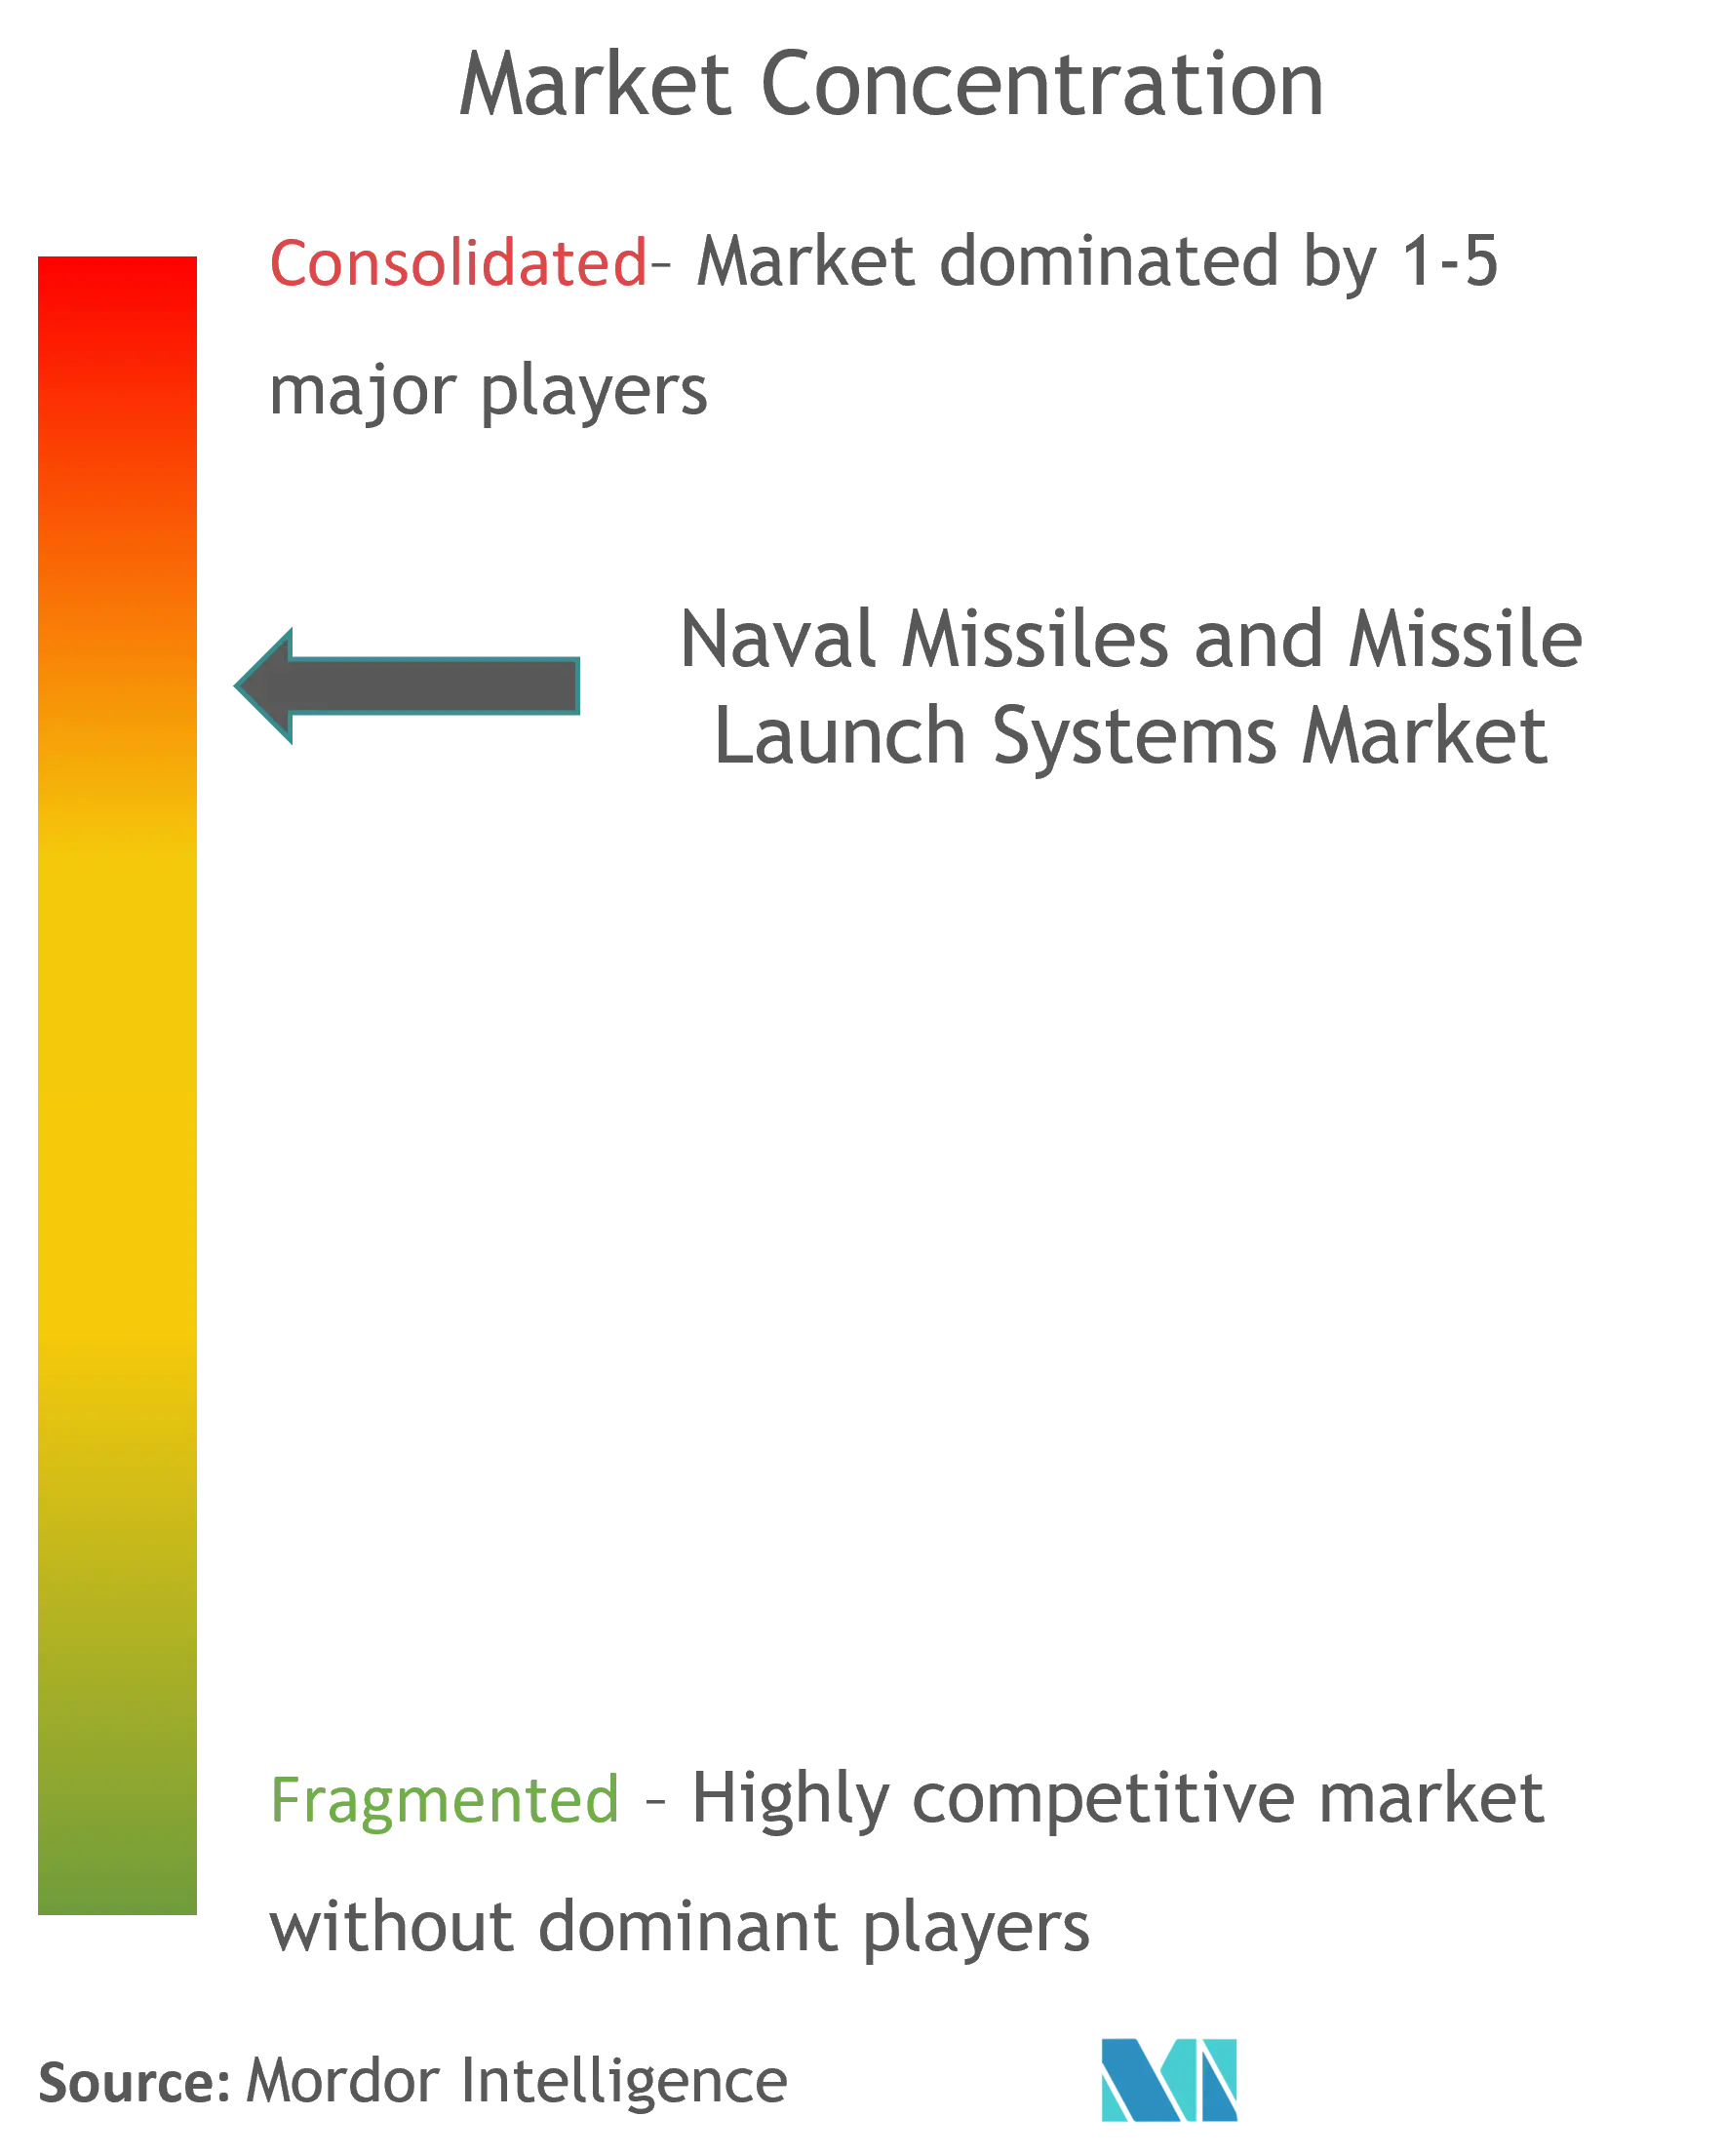 海軍ミサイルおよびミサイル発射システム市場 CL updated.png